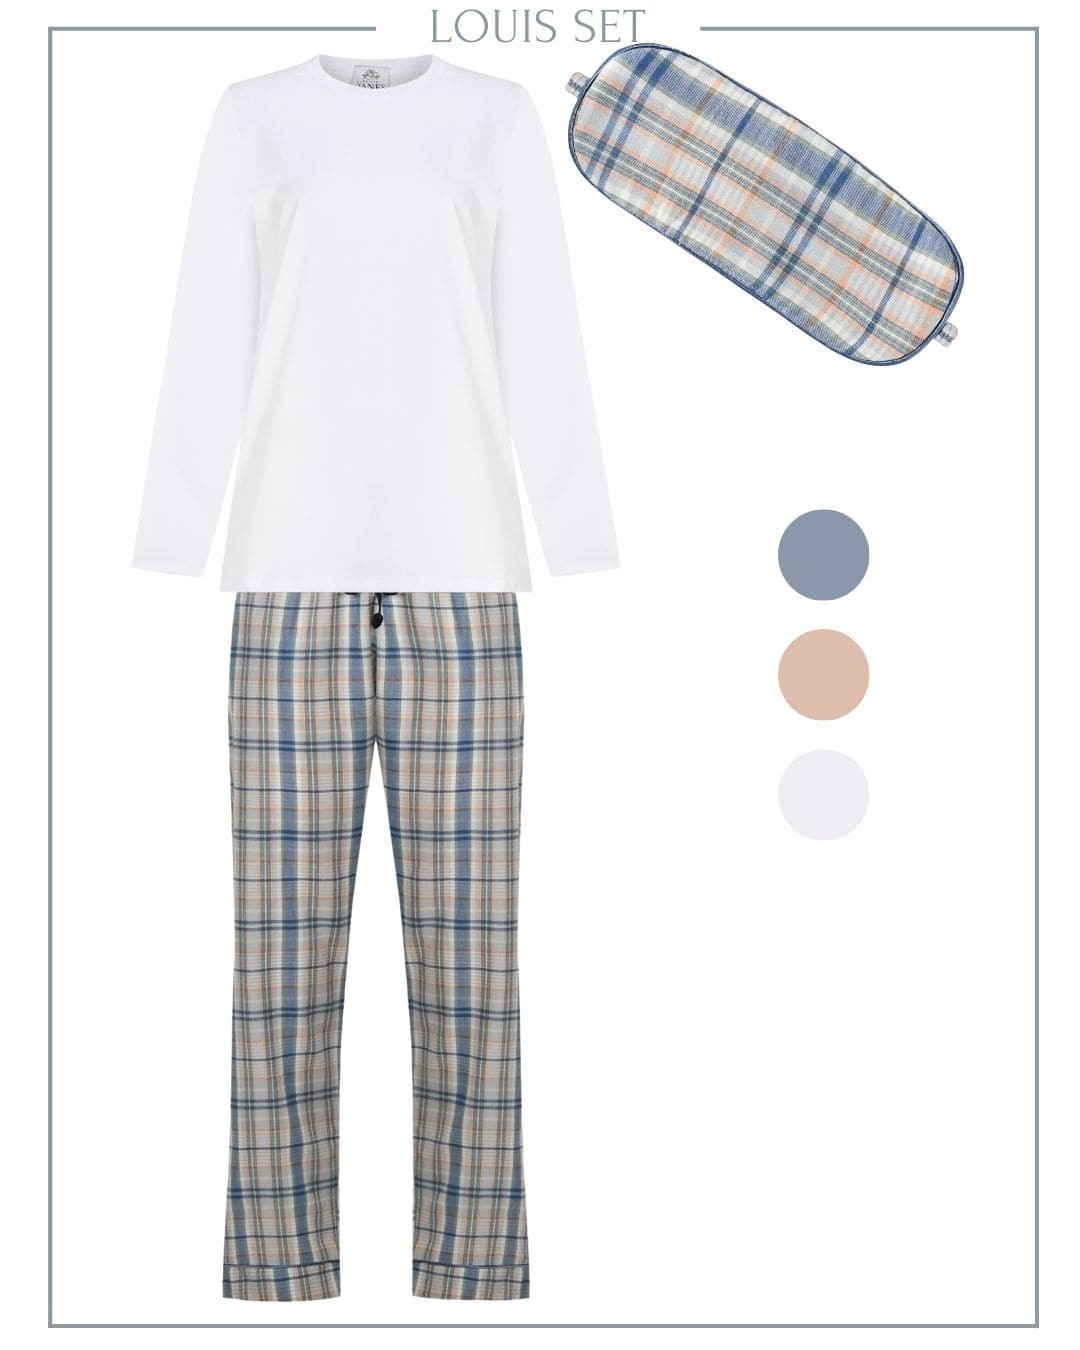 Louis Men's T-shirt Pajama Set with Eye Mask